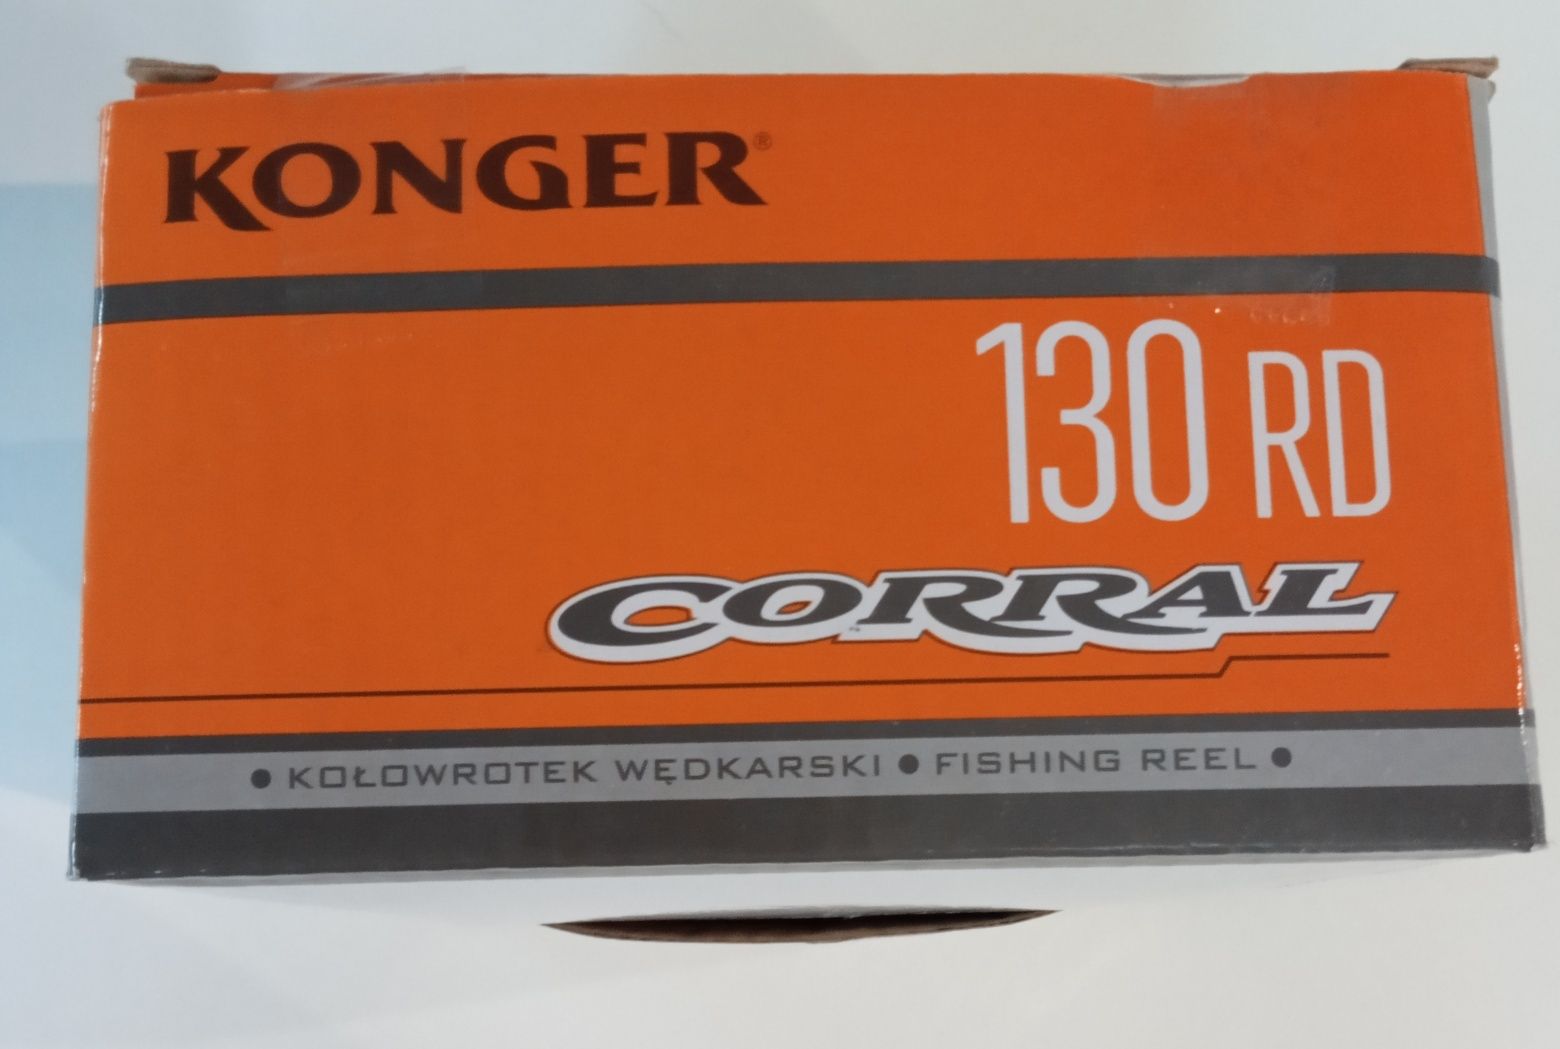 Kołowrotek KONGER model CORRAL 130 RD